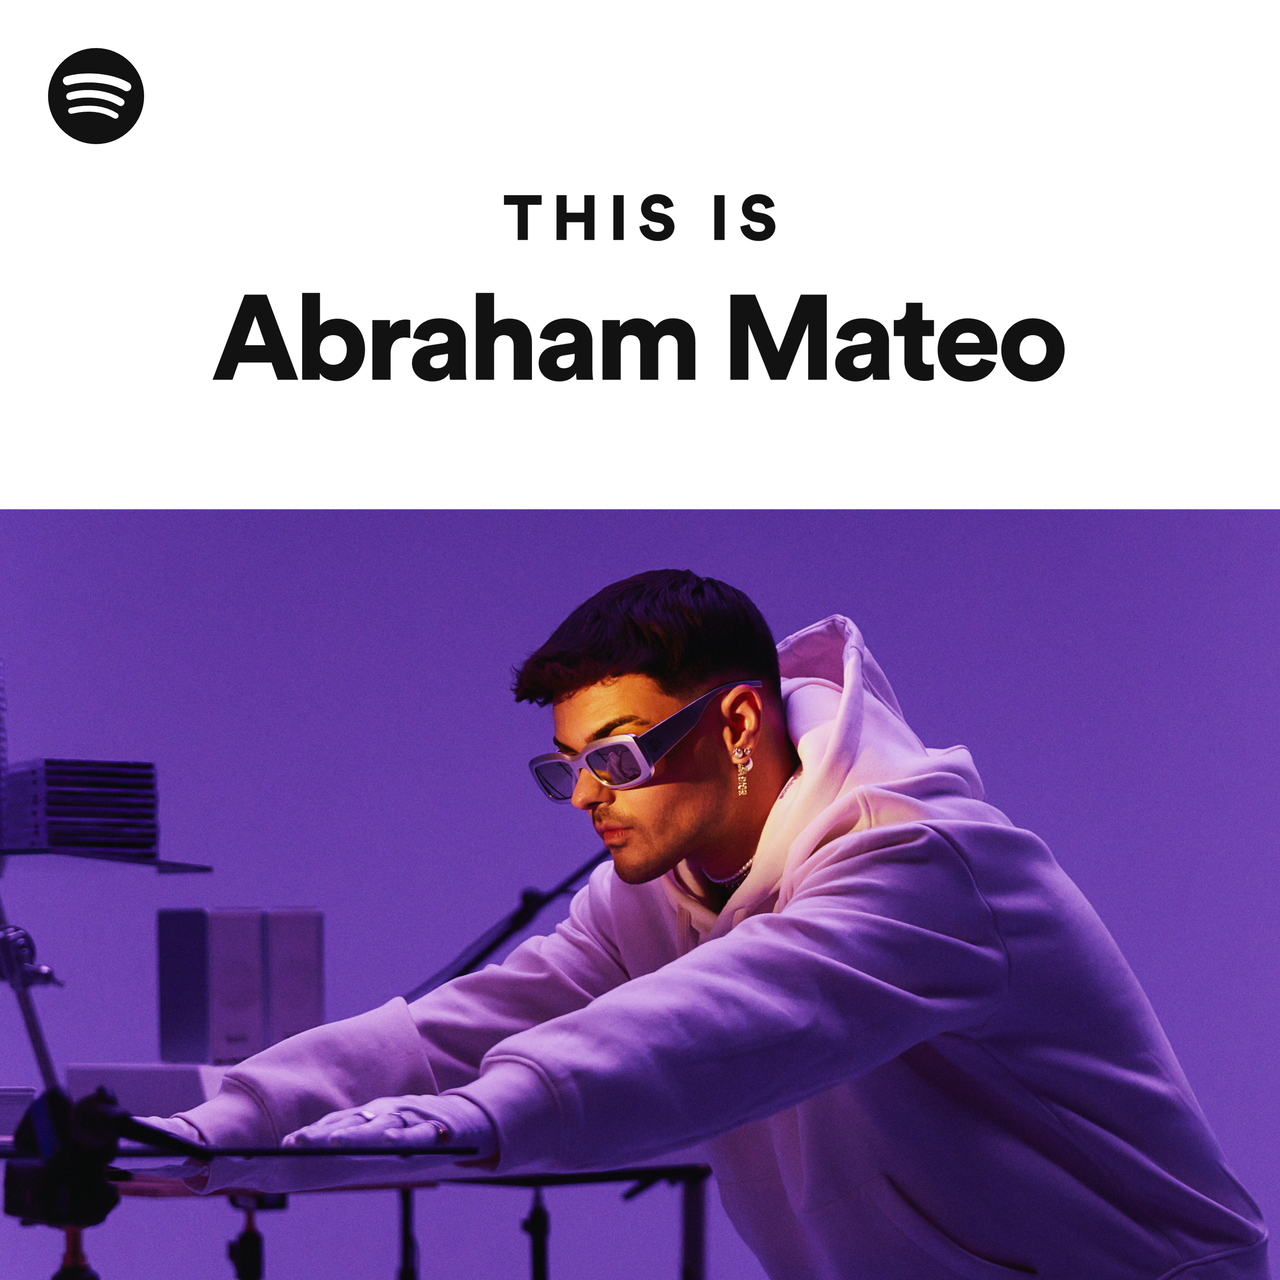 Abraham Mateo – Maniaca, ¿Todavía no escuchaste #Maniaca de Abraham Mateo?  🙅🏻‍♂️🪩 Dale Play ahora en todas las plataformas de música 🎶 👉🏼   By Sony Music Argentina